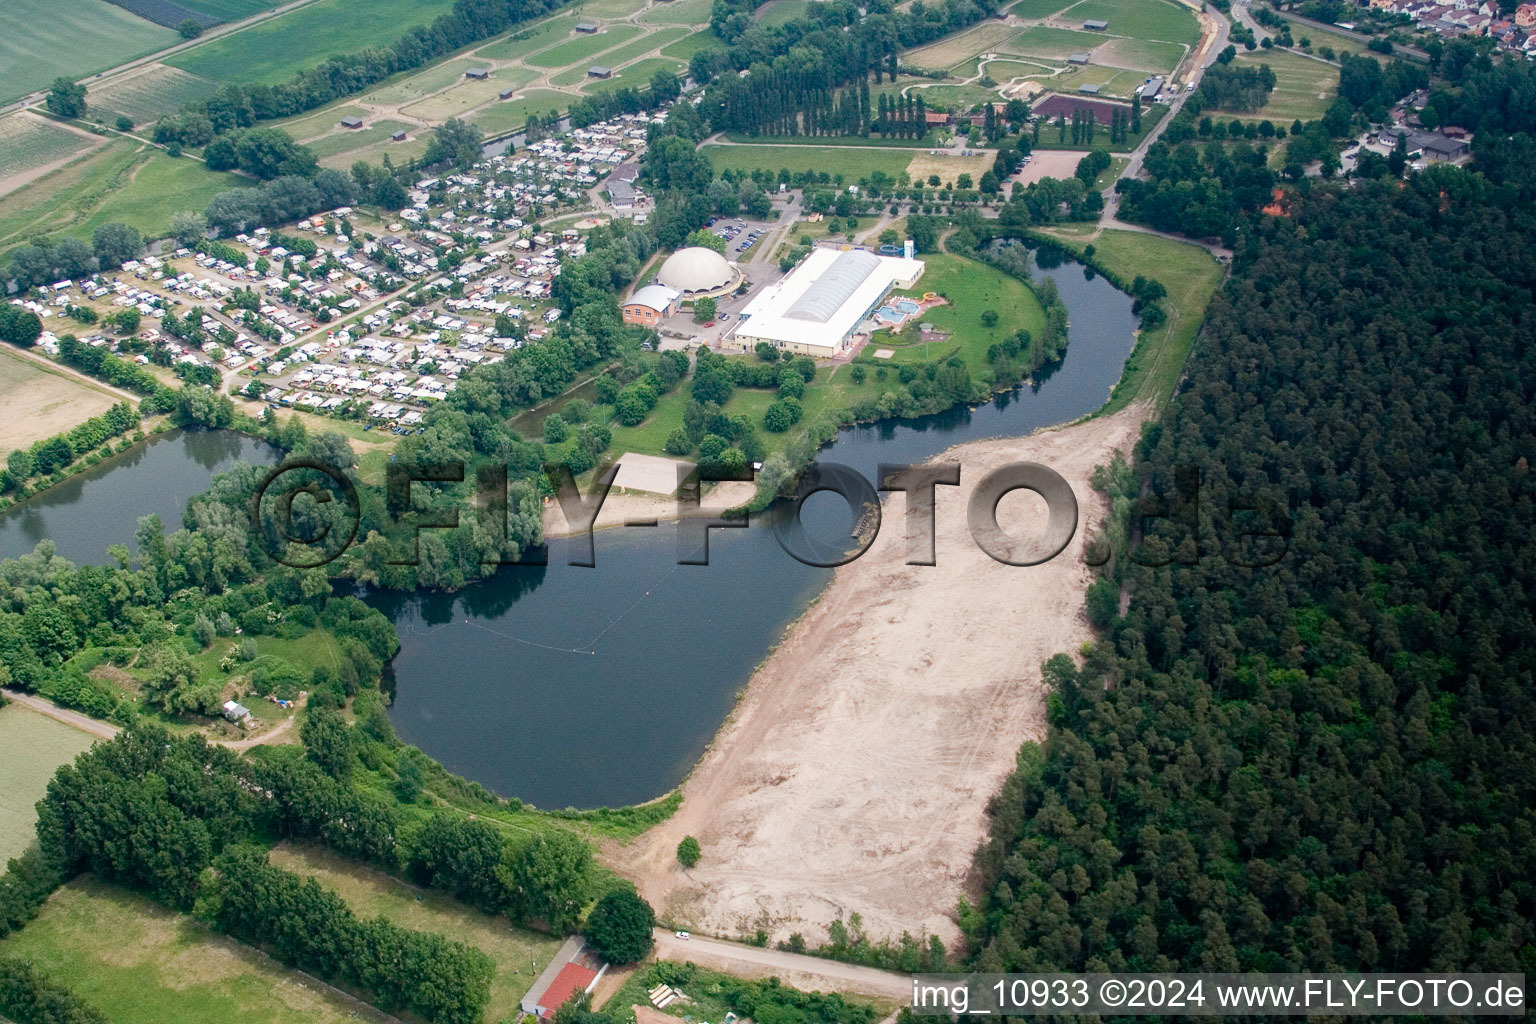 Vue aérienne de Zones riveraines sur la plage de sable de la piscine extérieure Moby Dick à Rülzheim dans le département Rhénanie-Palatinat, Allemagne